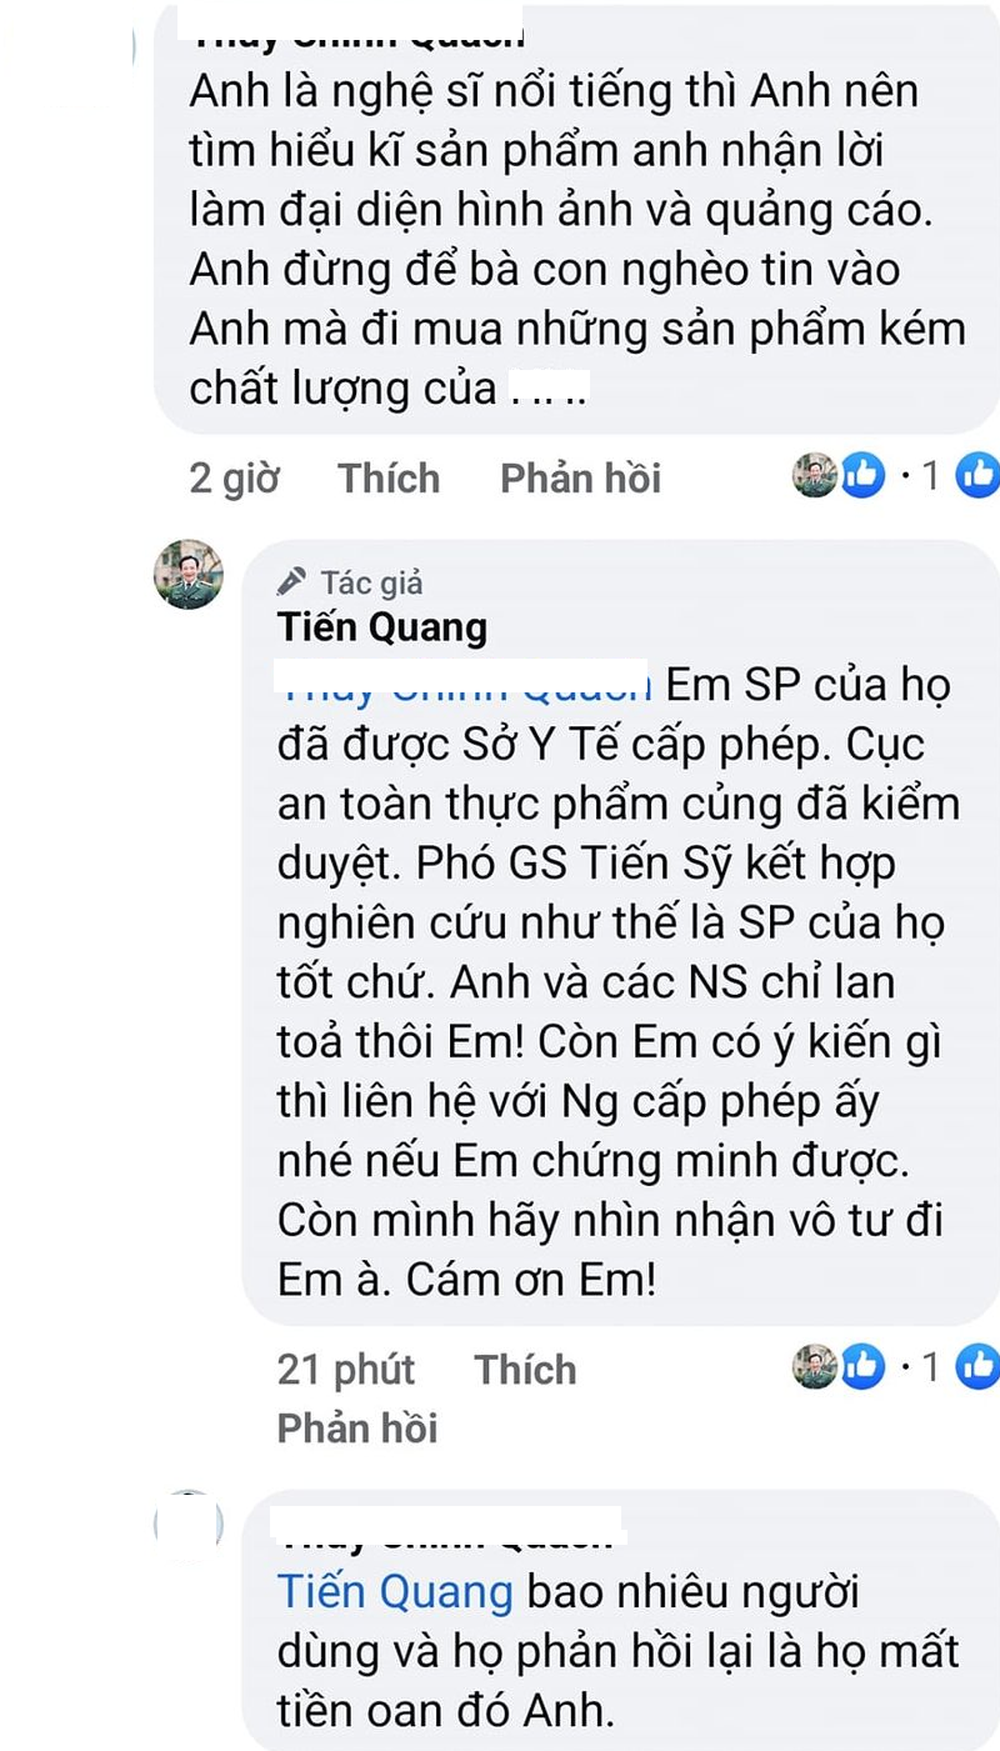 Bị khán giả vào tận Facebook nhắc nhở chuyện quảng cáo, NSƯT Quang Tèo lên tiếng - Ảnh 1.